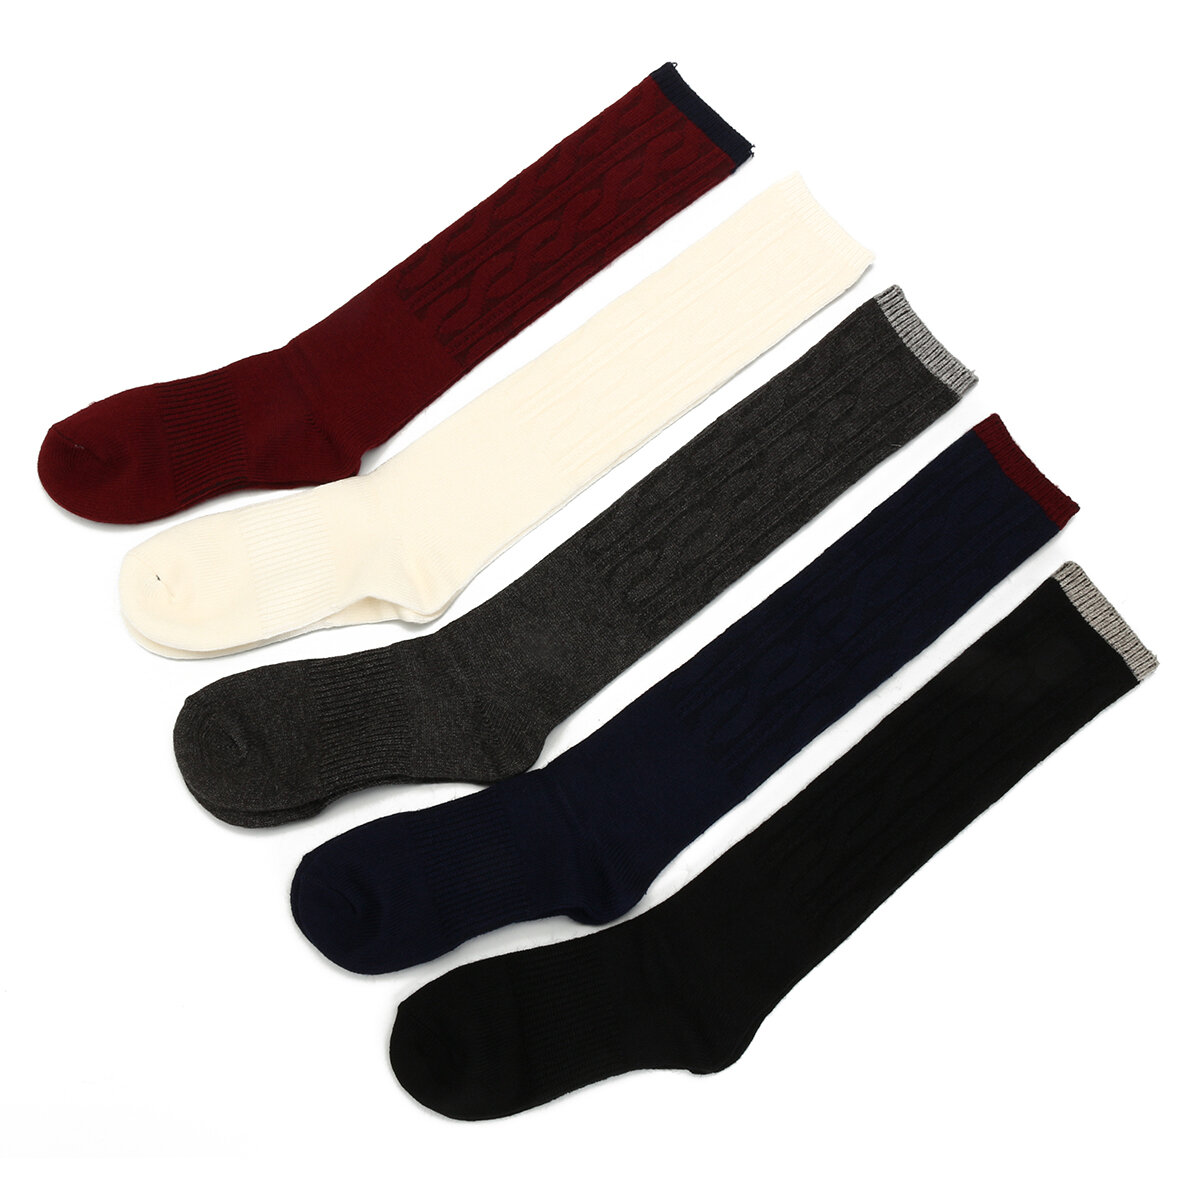 Kadınlar için %100 Kaşmir Yünü Diz Üstü Katı Sıcak Kalın Yumuşak Rahat Bot Çorabı Kış Çorabı